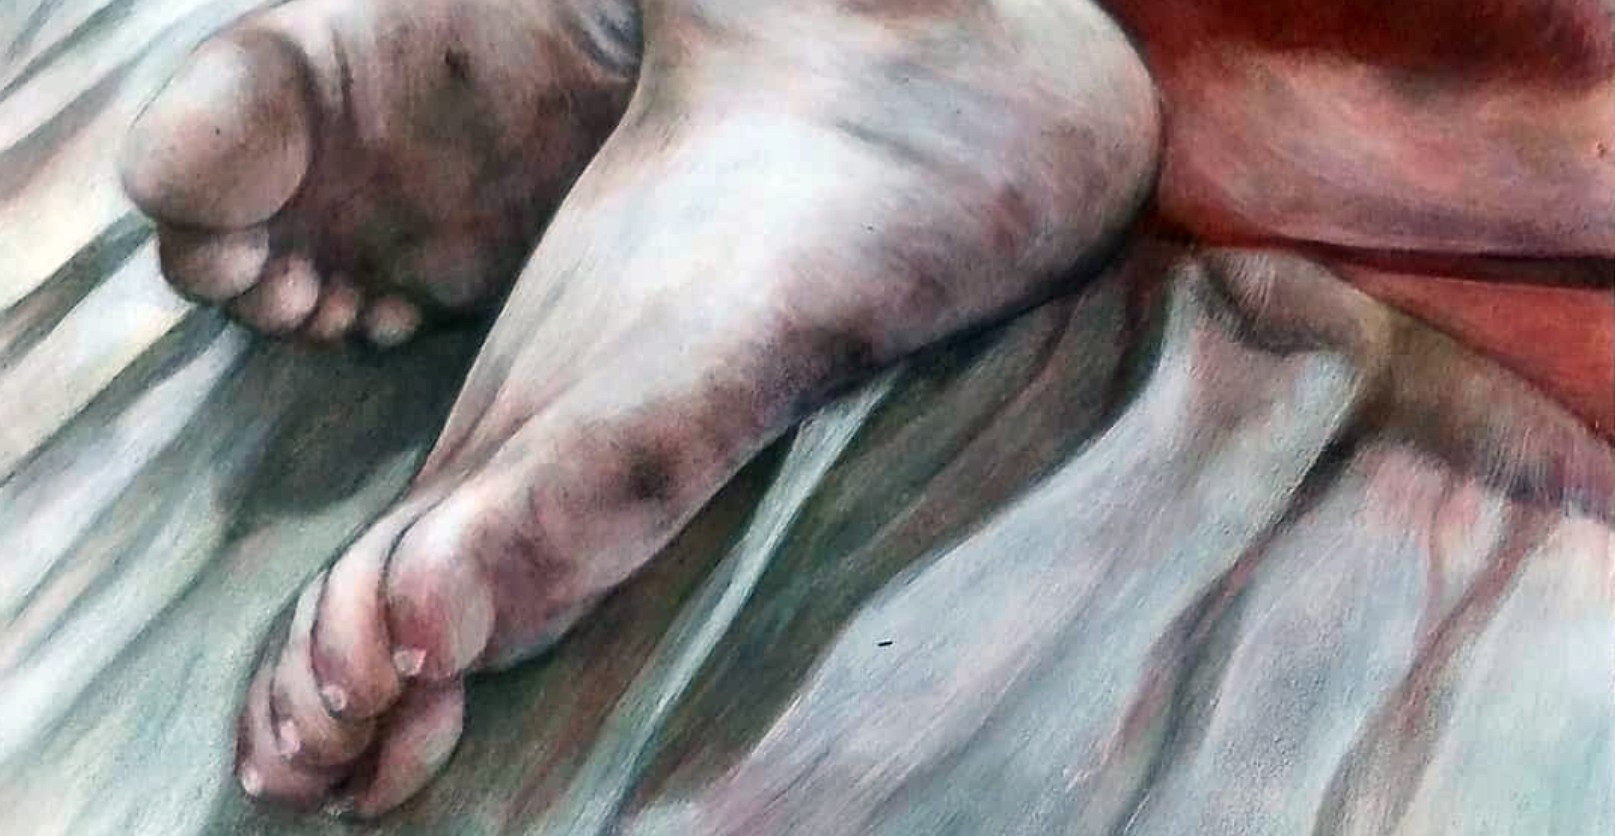 Dirty Feet / Clean Soul: 2018, acrylic on mdf, 18cm x 35cm